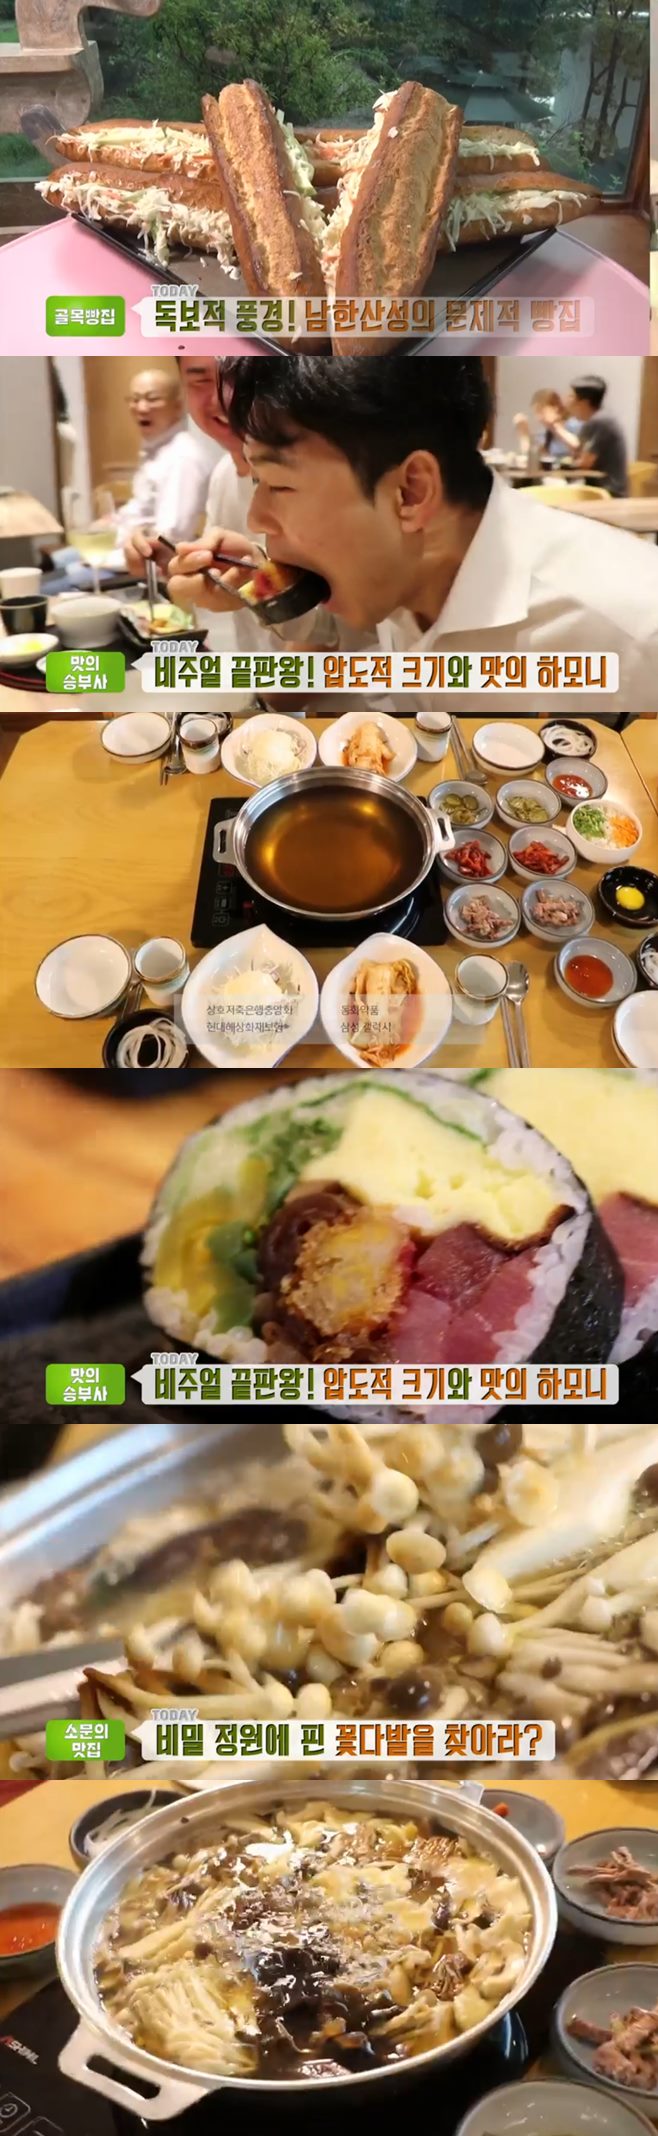 ‘생방송투데이’ 버섯샤부샤부(퇴촌버섯집)+맛의승부사 대왕김밥(스시산블루)+남한산성 위베이크 맛집